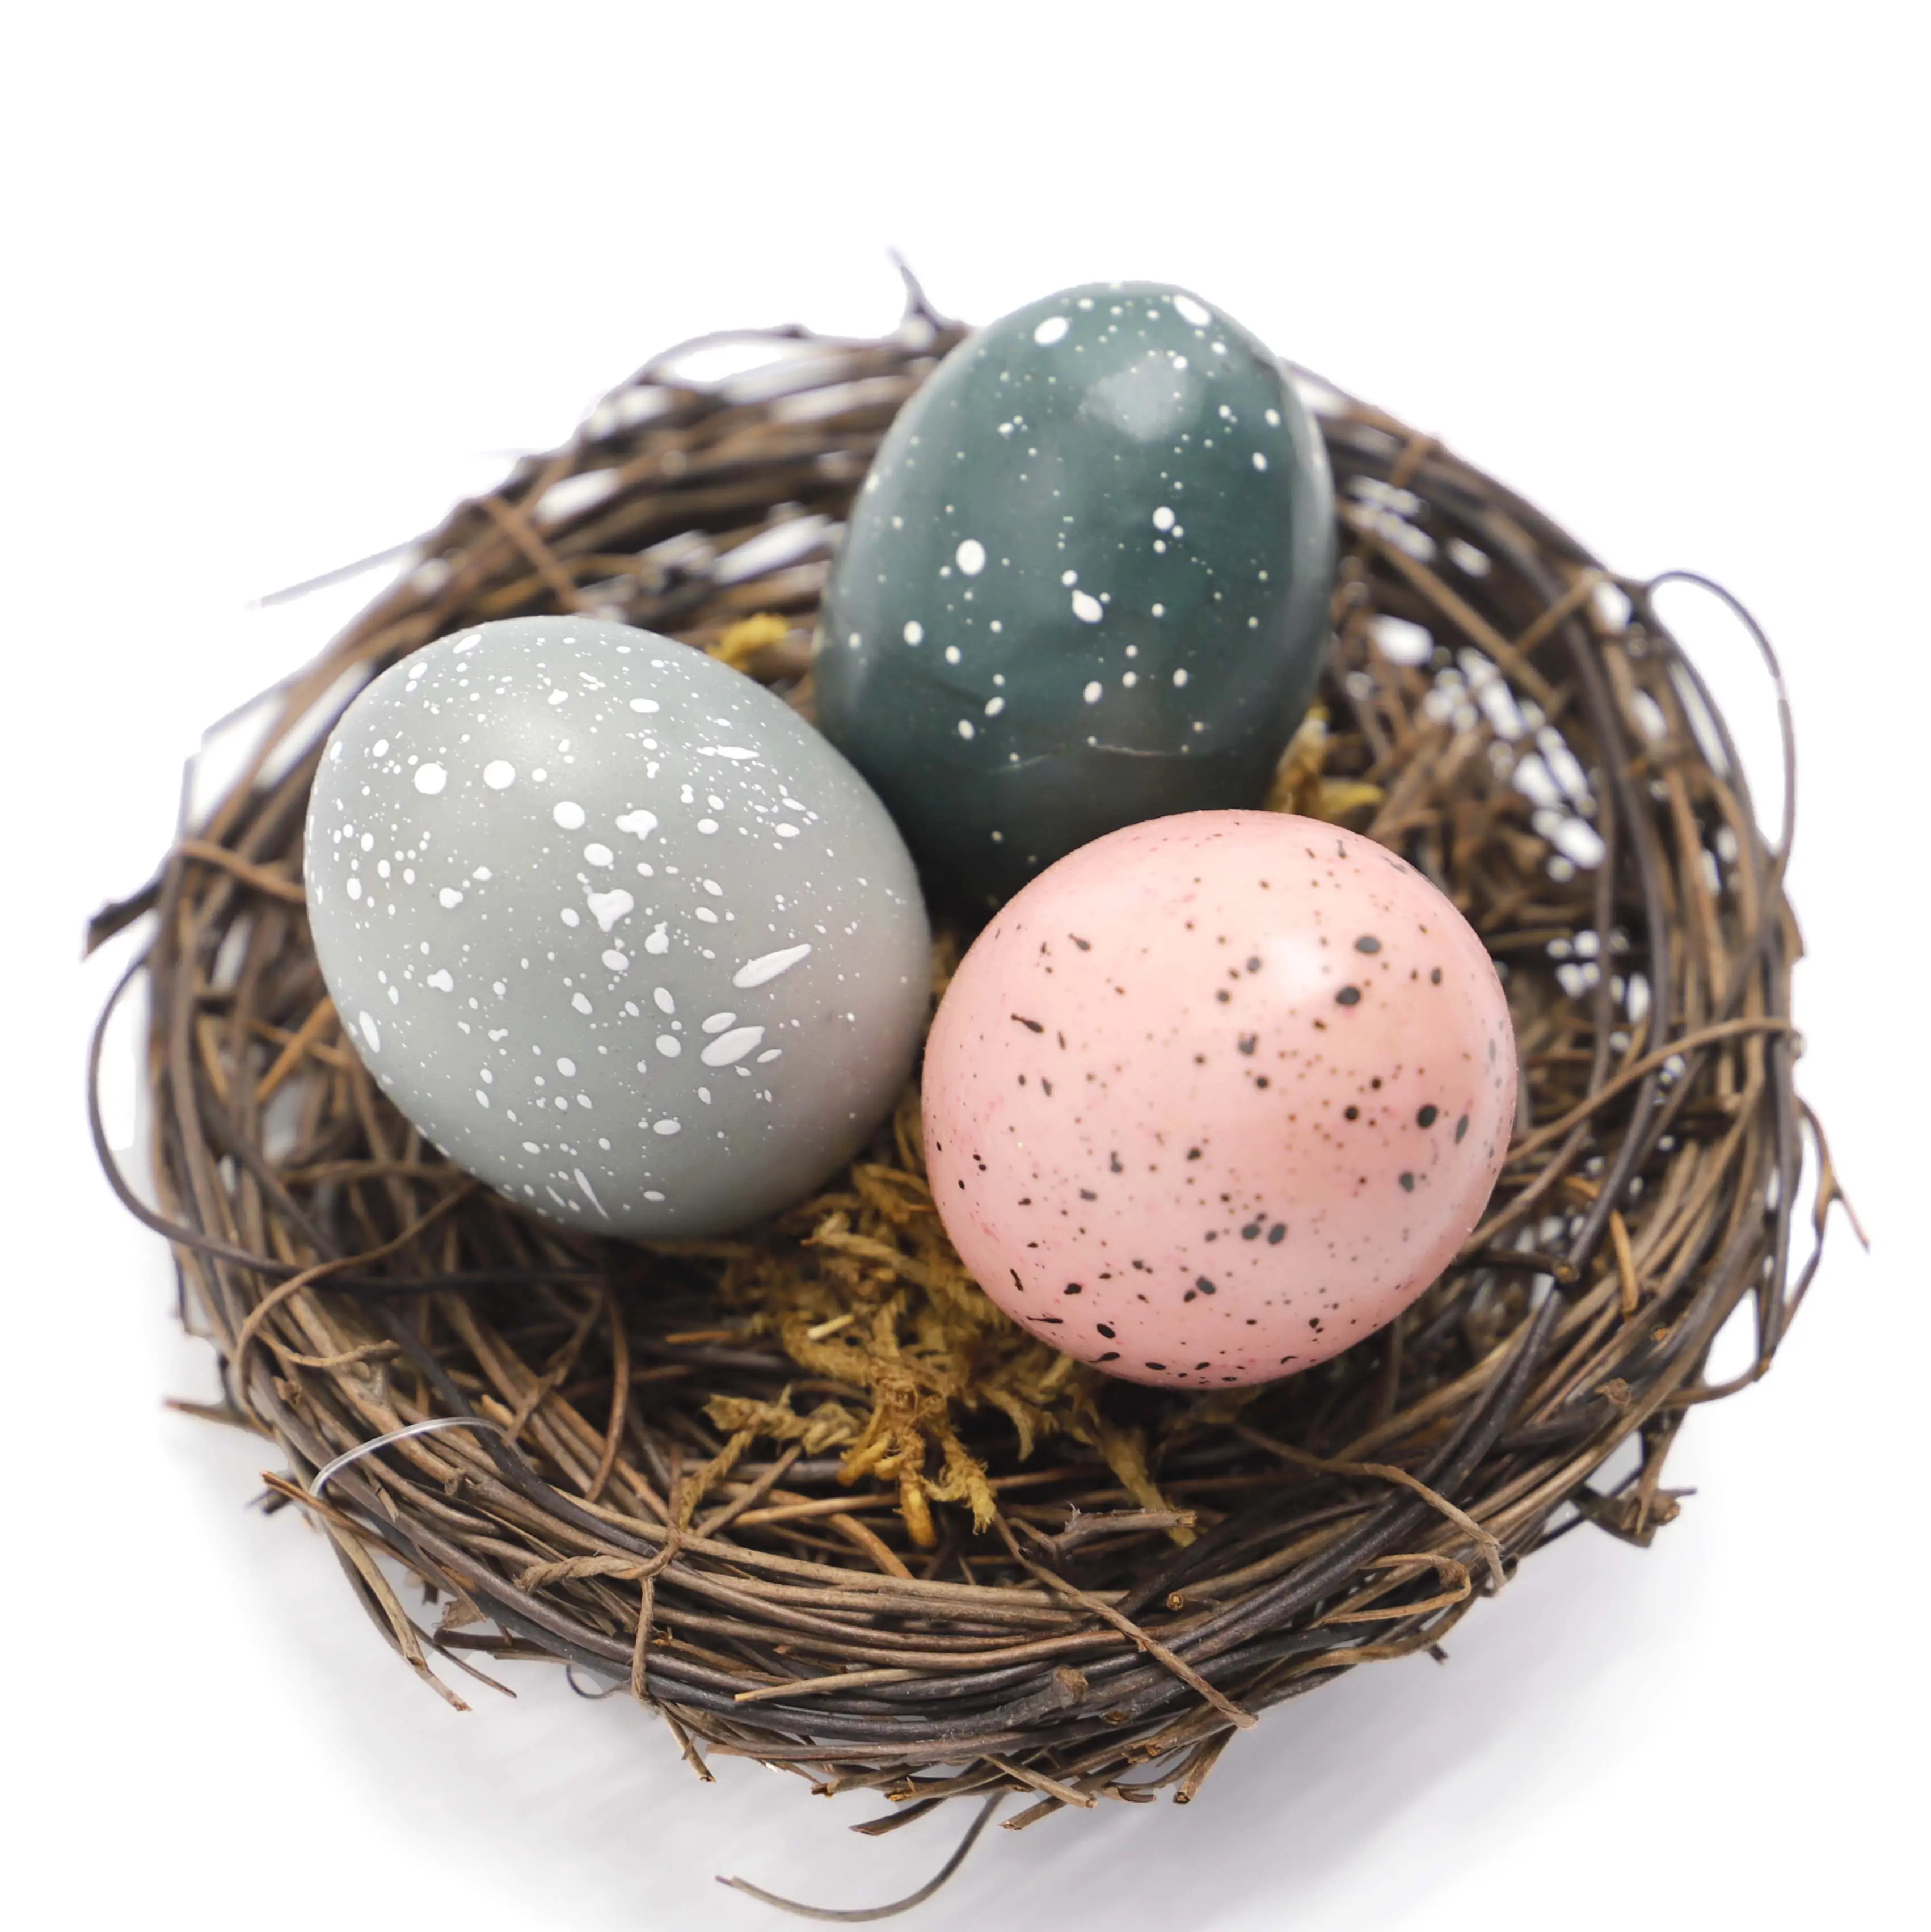 Nido di uccello fatto a mano nido artificiale con uovo per bambini decorazione pasquale giardino cortile casa festa decorativa uova di pasqua